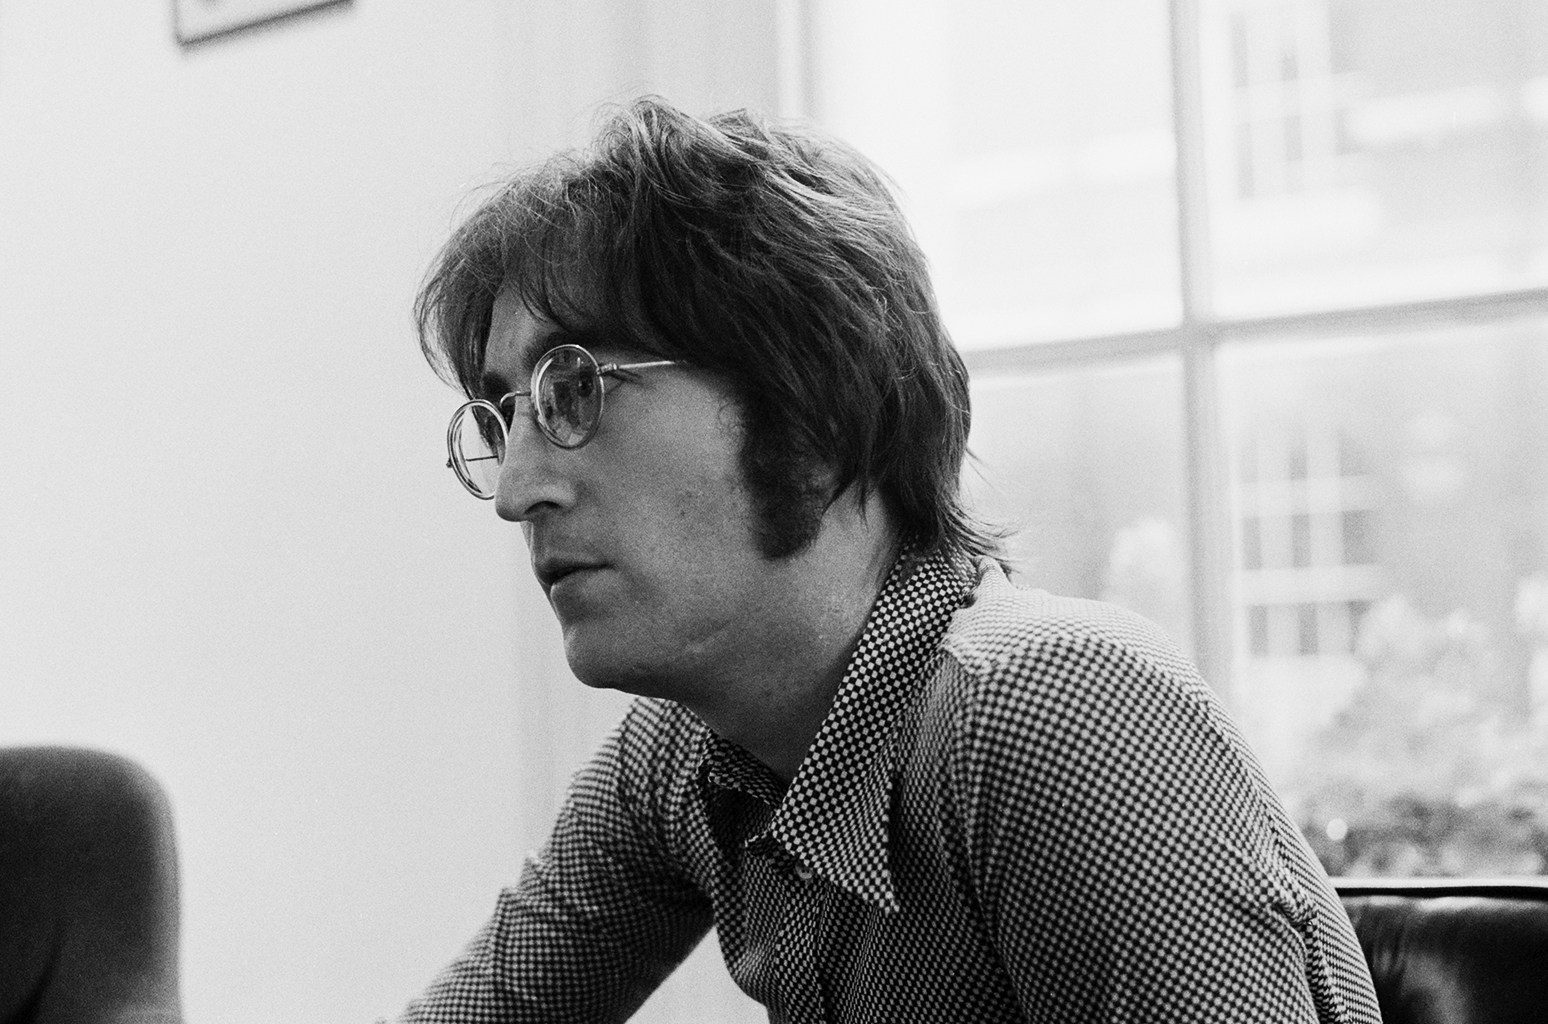 High Resolution Wallpaper | John Lennon 1548x1024 px